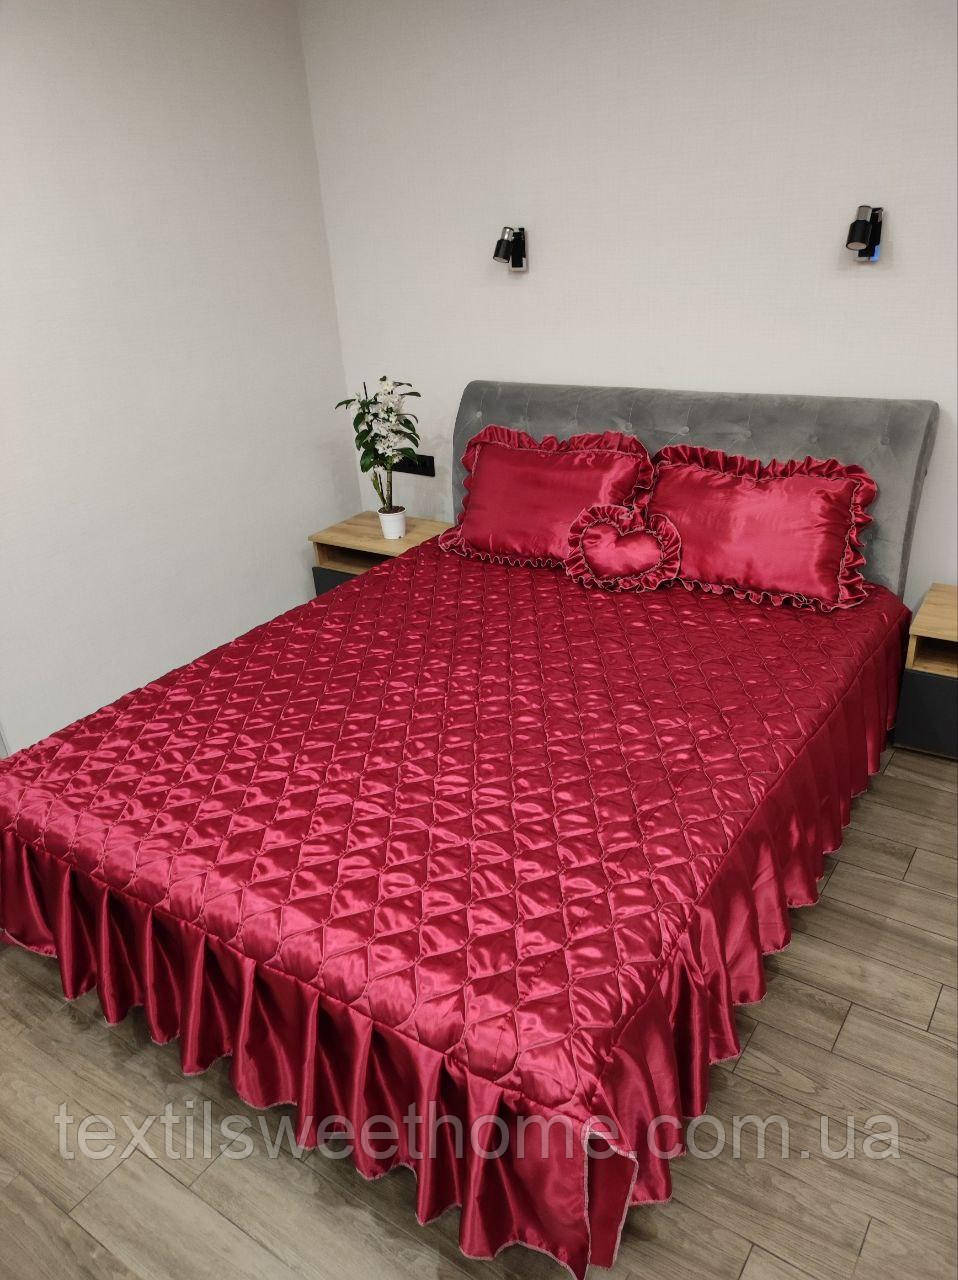 Атласне покривало з подушками для двоспального ліжка, красиве червоне покривало